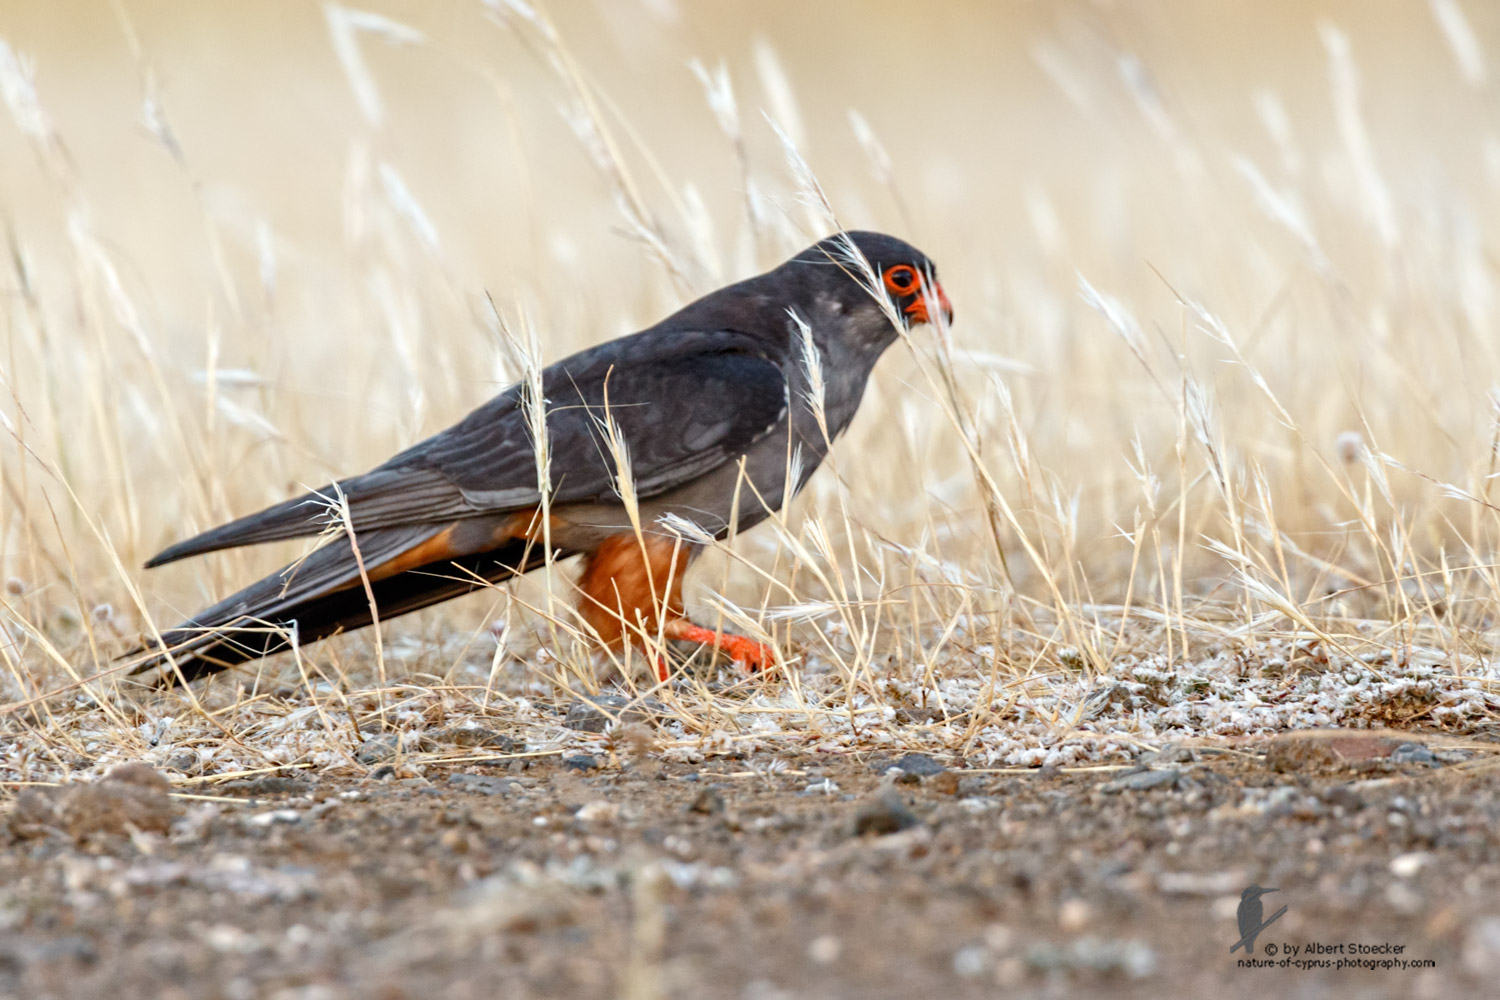 Falco amurensis - Amur falcon - Amurfalke, Cyprus, Agia Varvara - Anarita, Paphos, Mai 2016